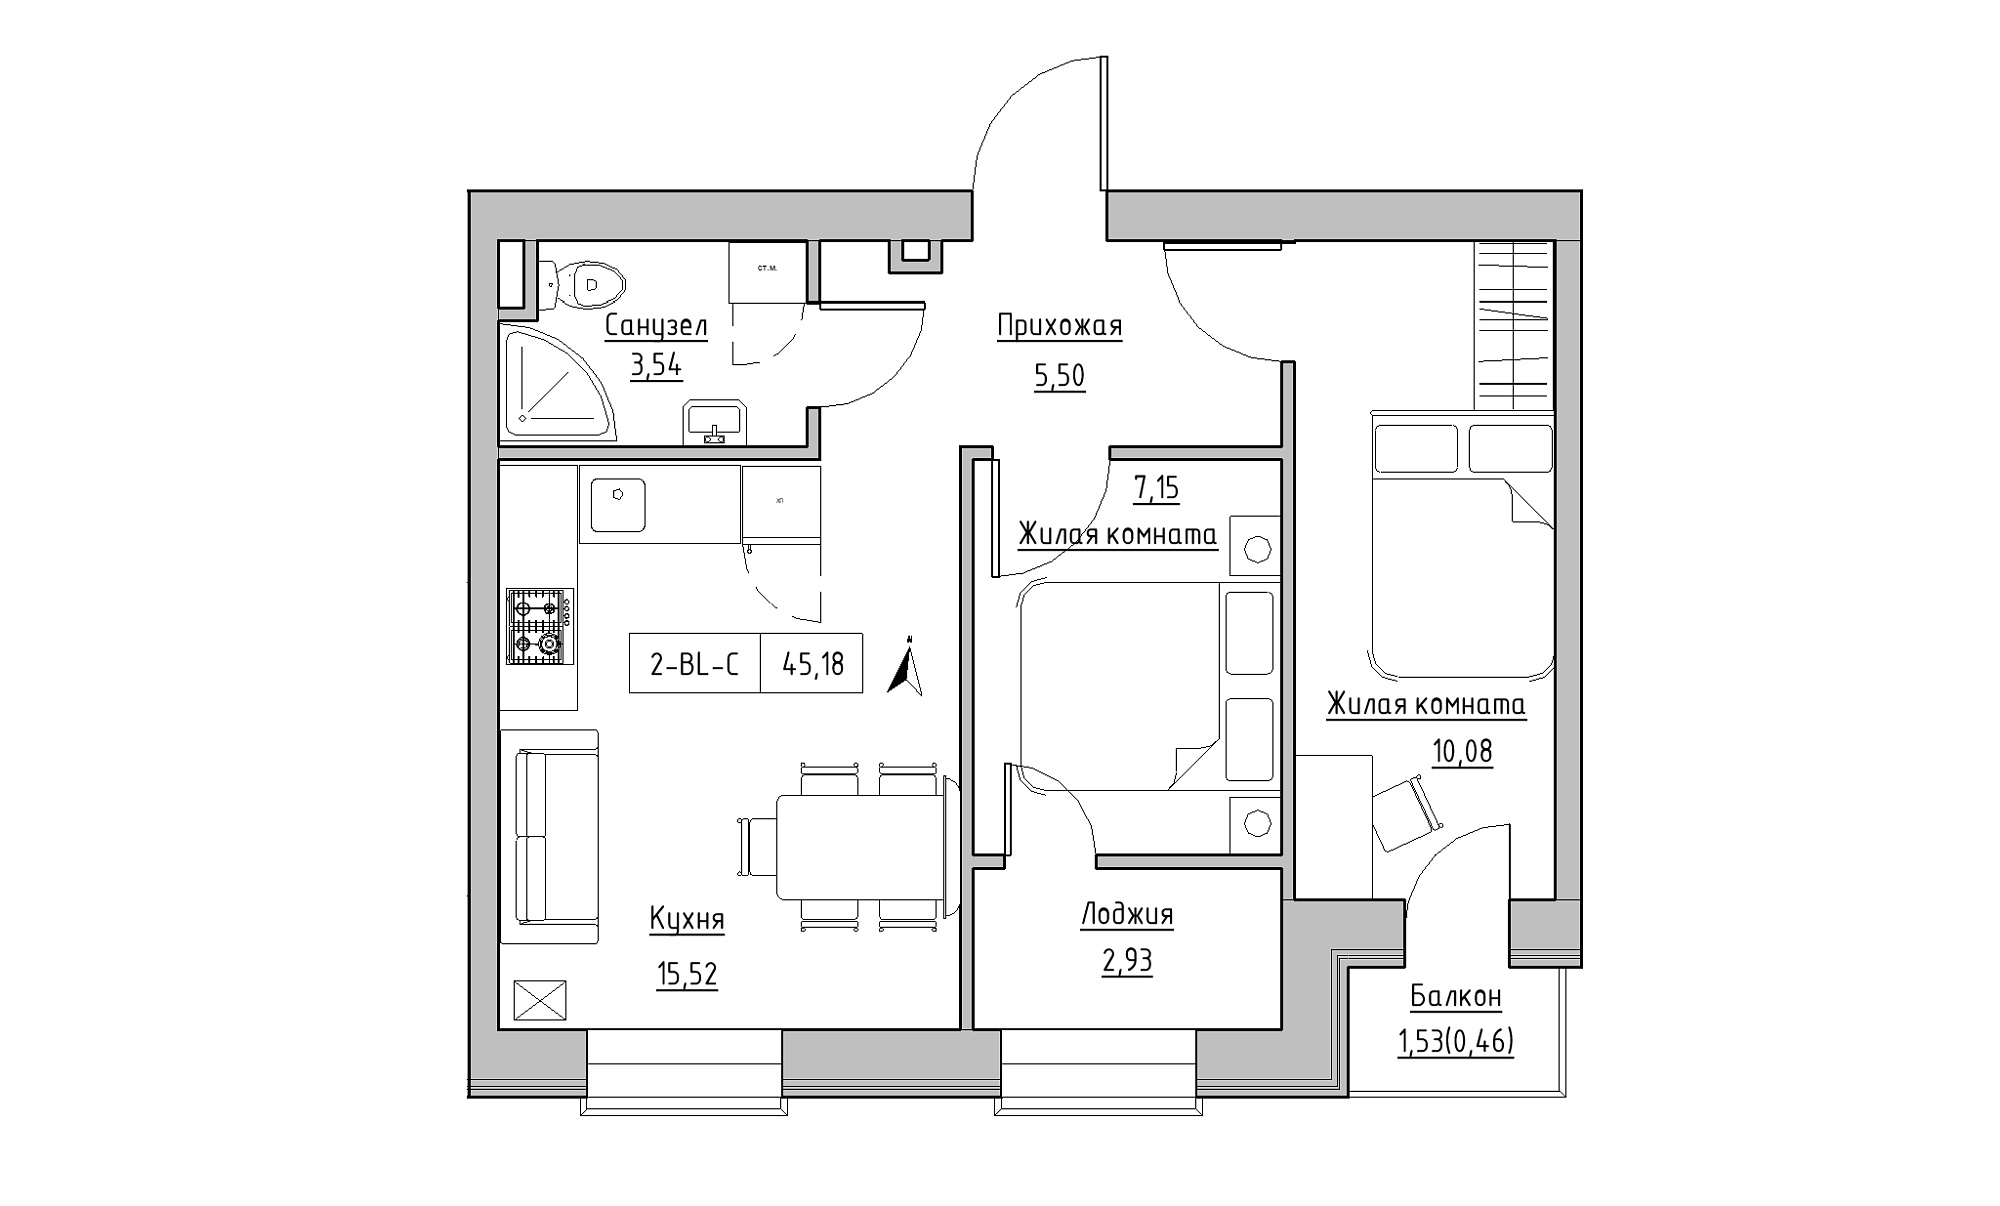 Планировка 2-к квартира площей 45.18м2, KS-023-04/0009.